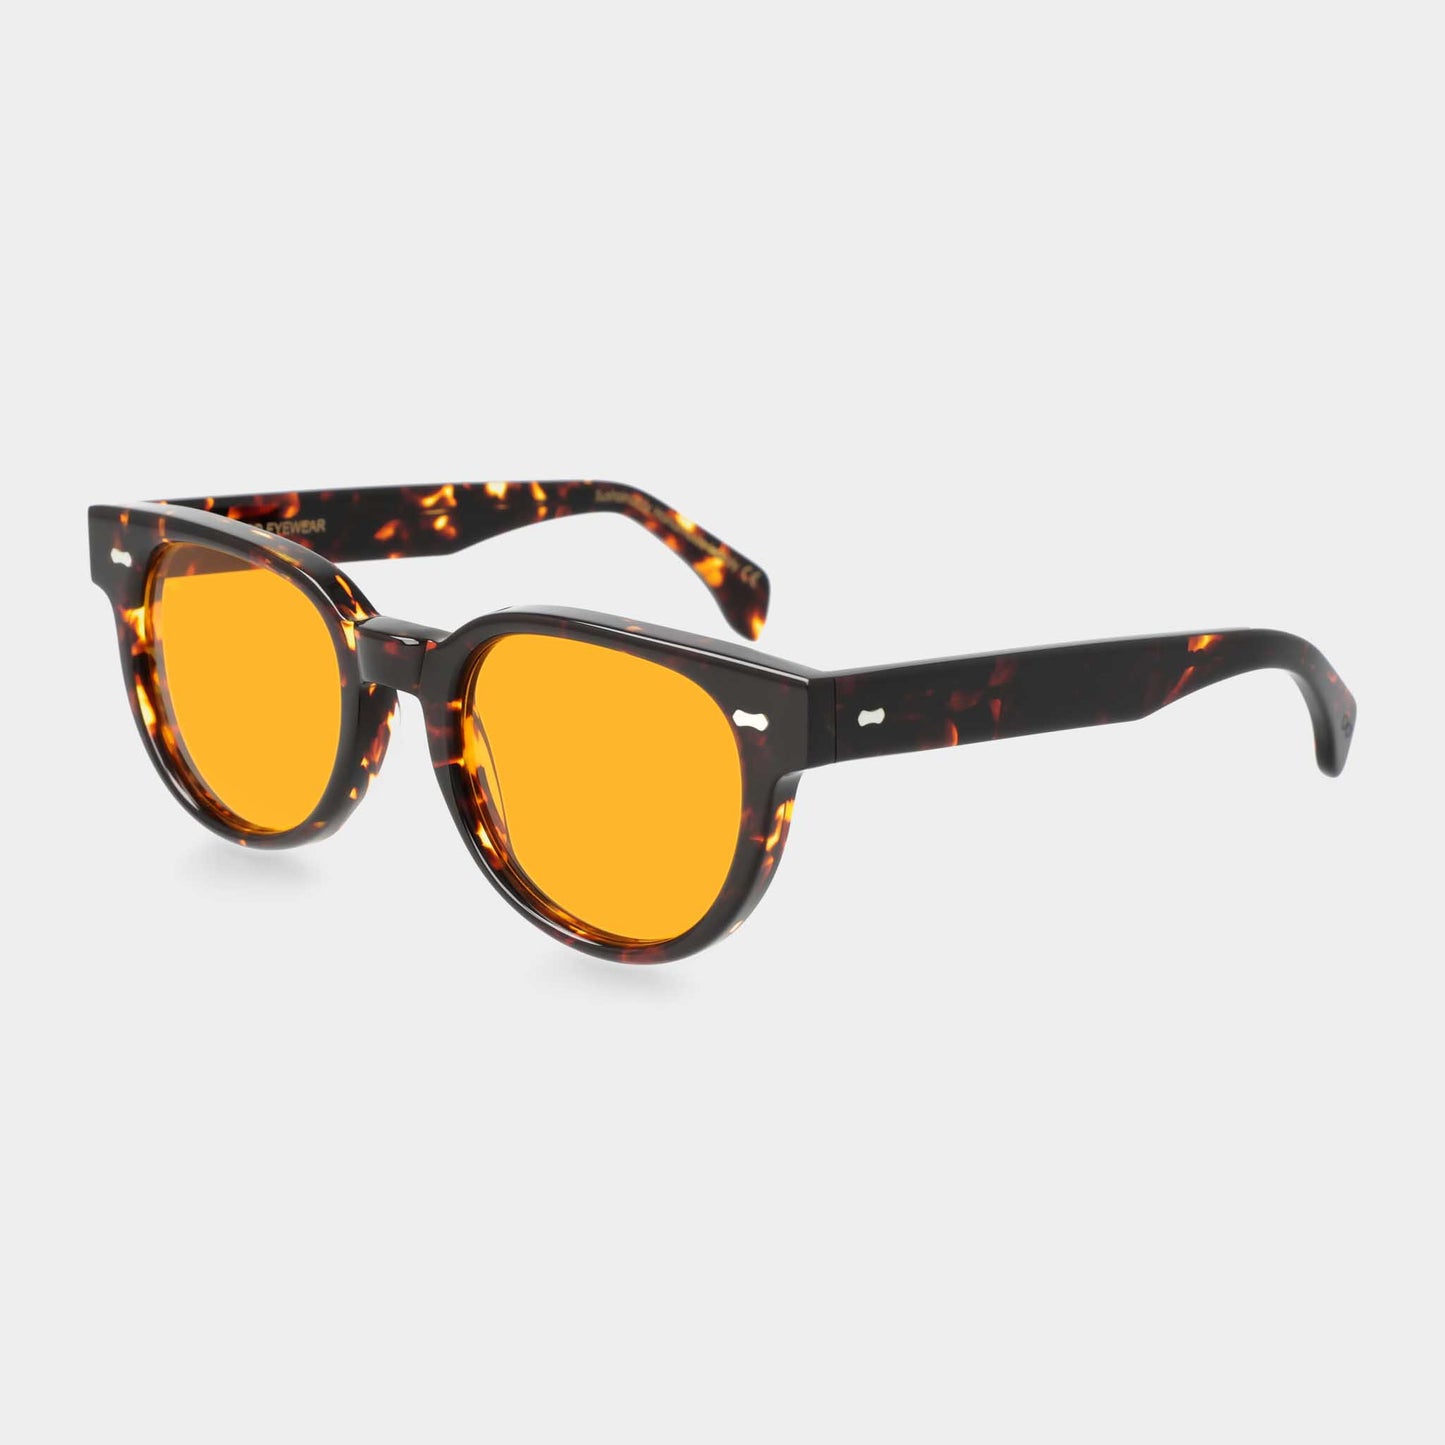 TBD Eyewear Palm Eco Dark Havana / Orange